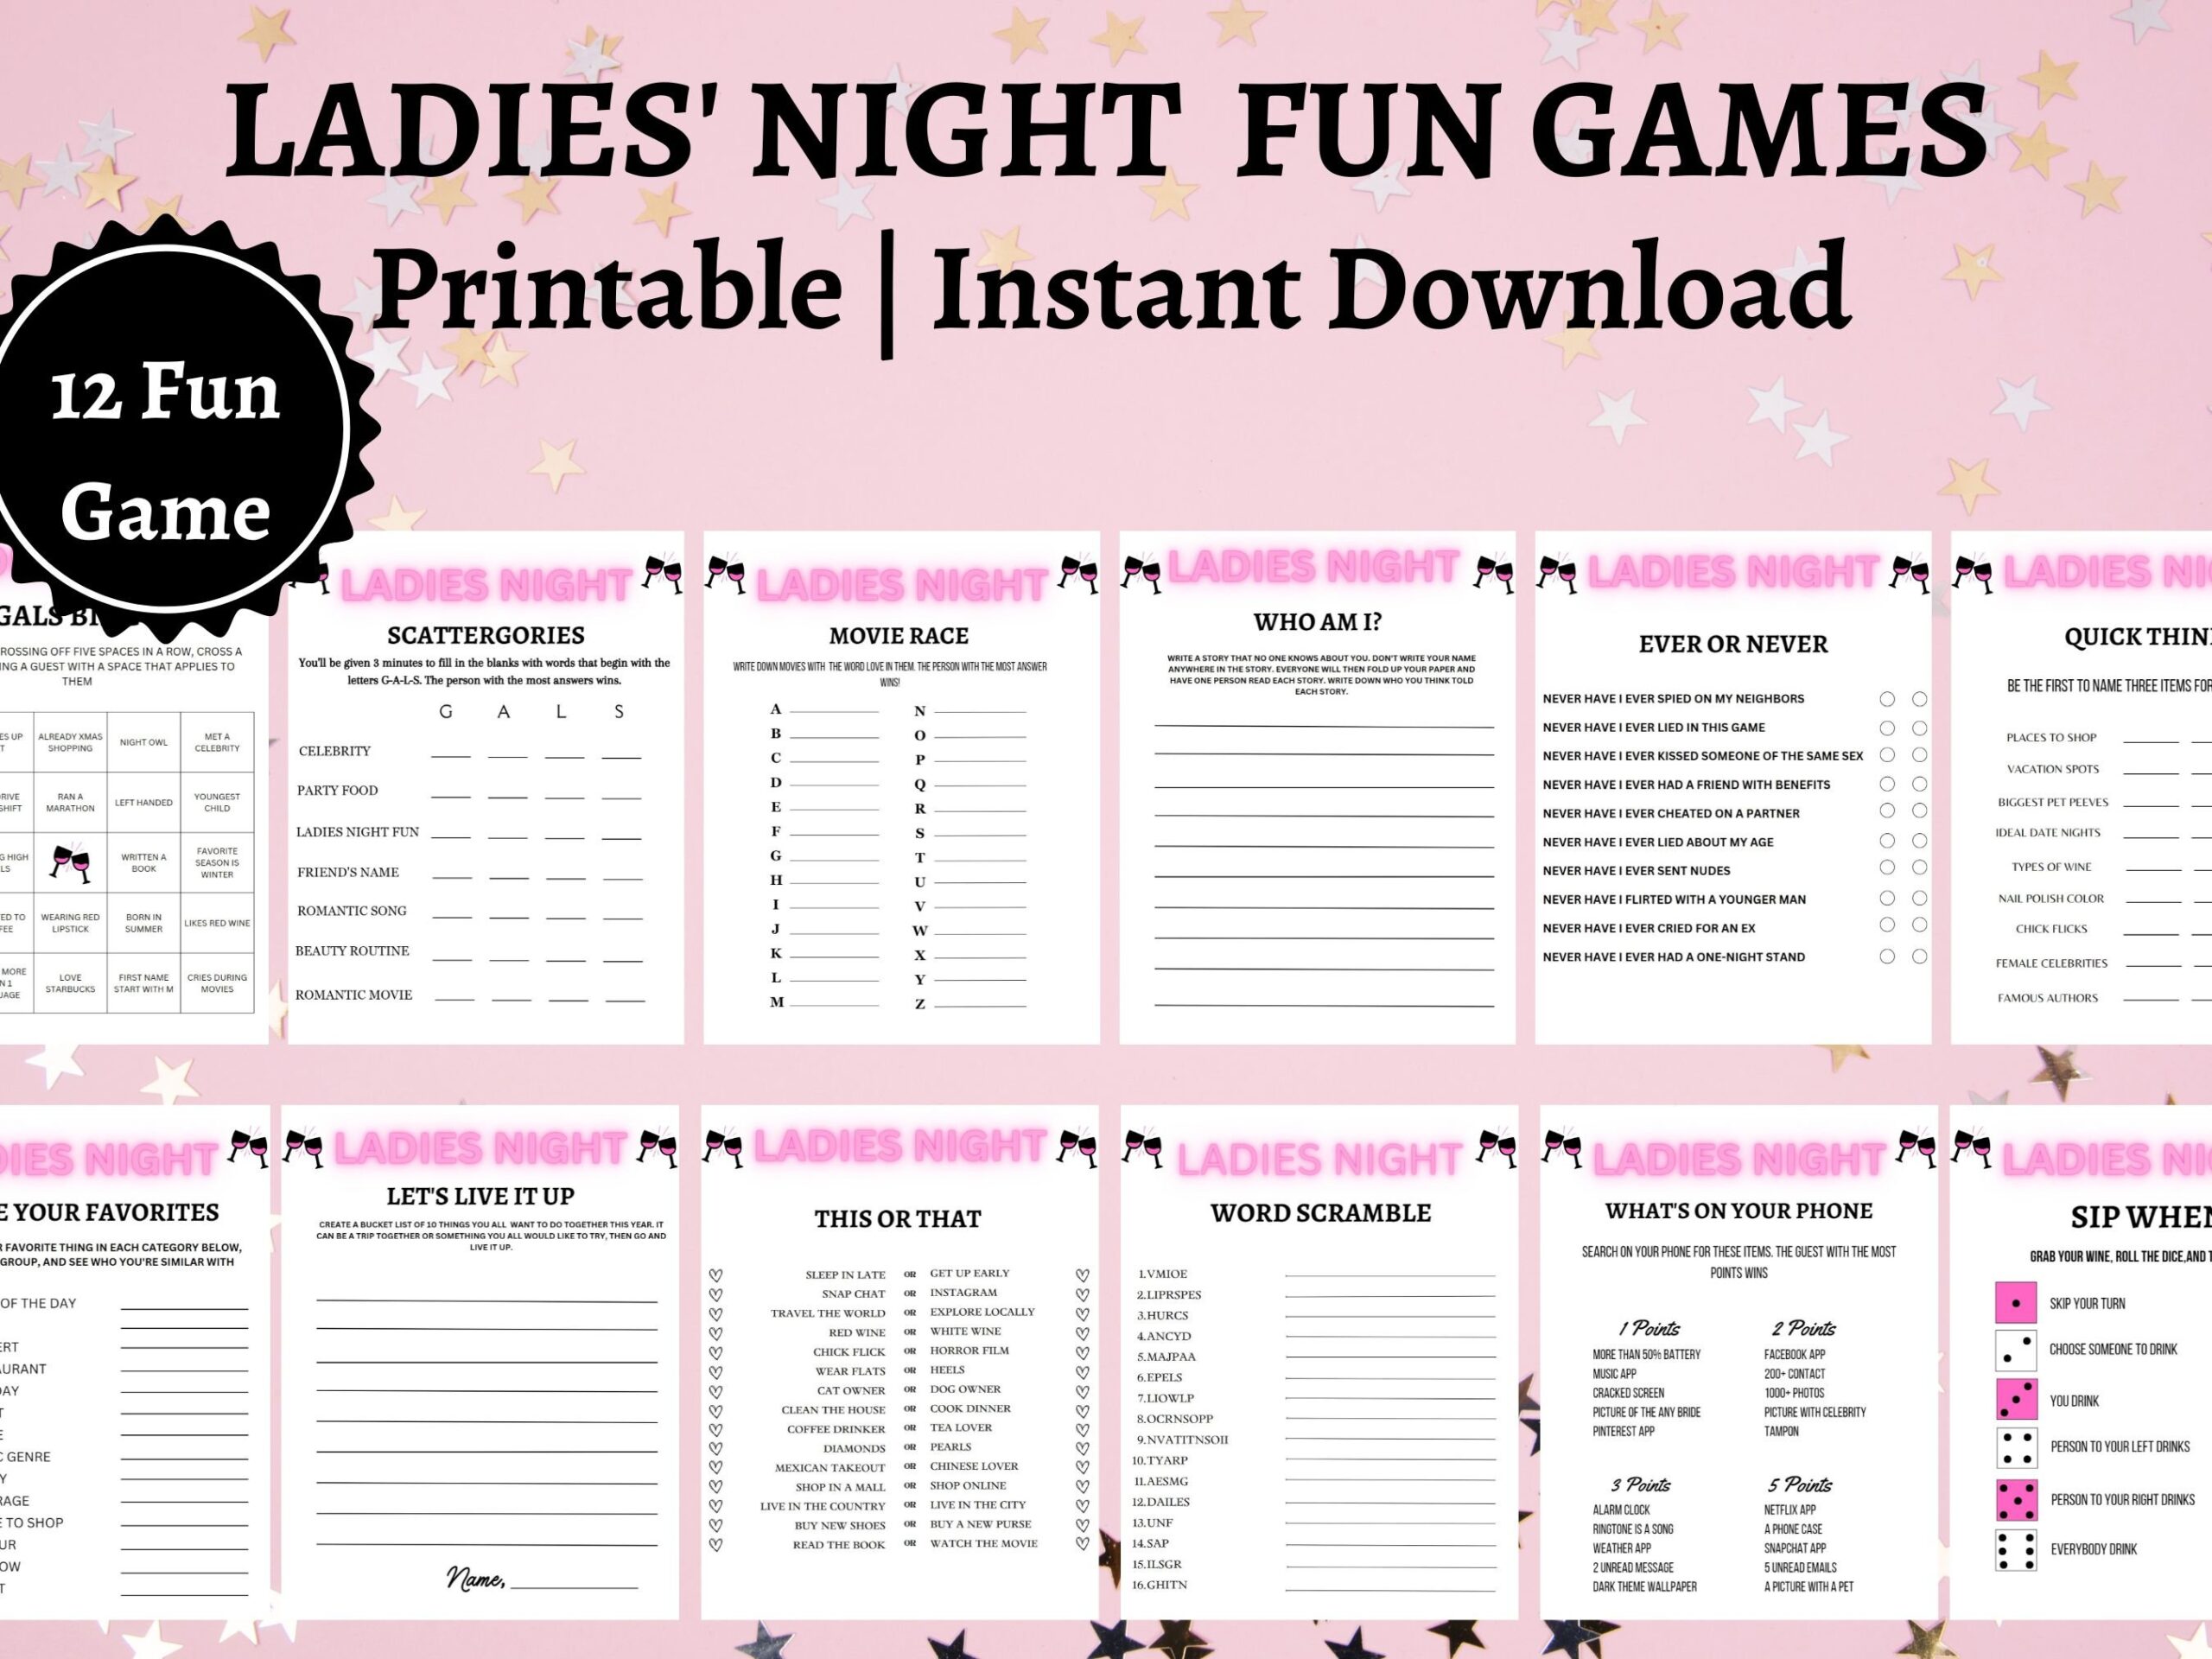 Ladies Night Games Ladies Night Printable Games Girls Night Games Holiday Games Printable Tea Party Games Printable Games Etsy